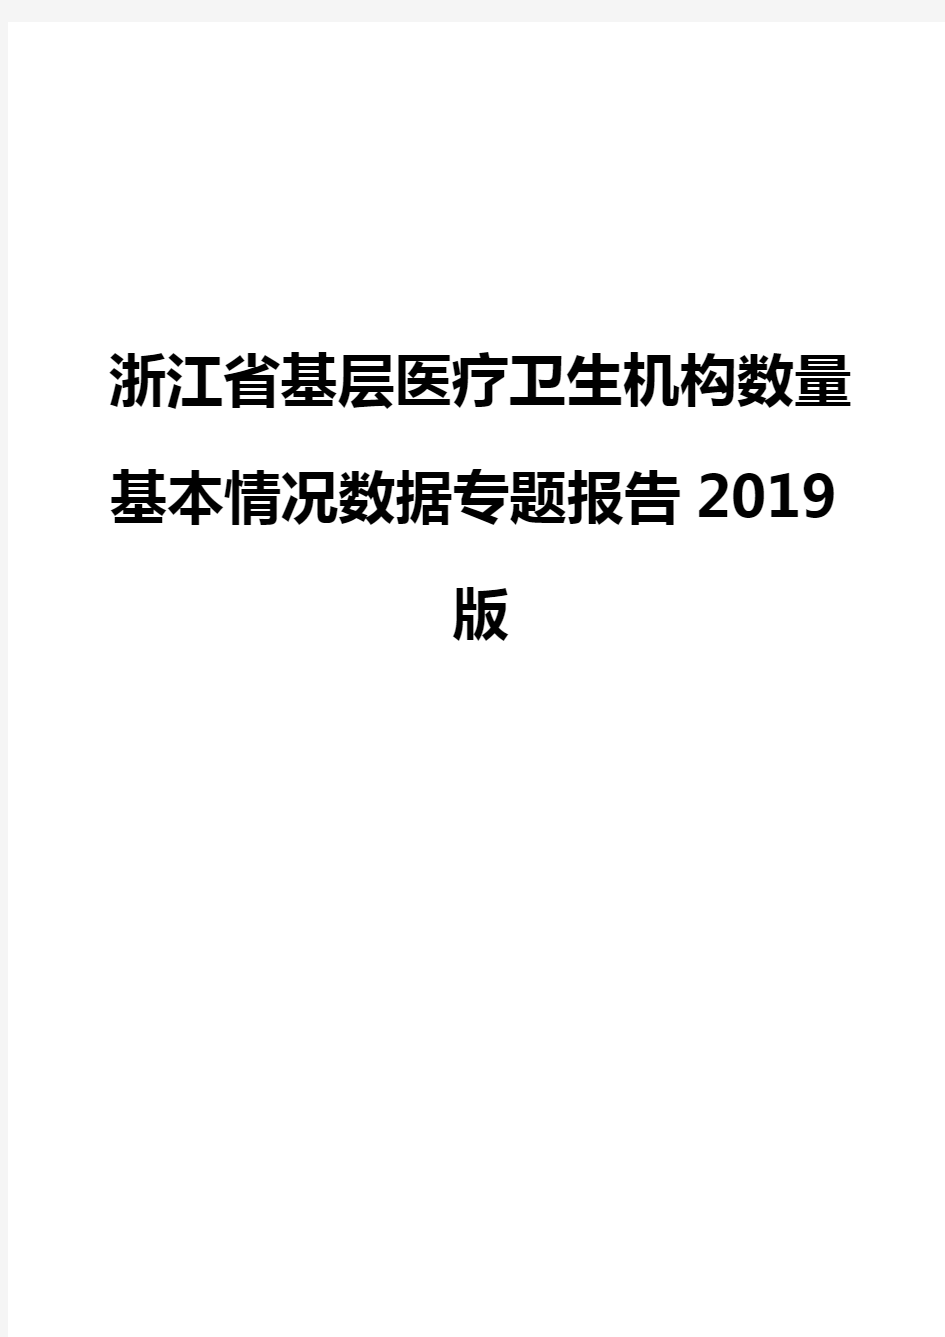 浙江省基层医疗卫生机构数量基本情况数据专题报告2019版